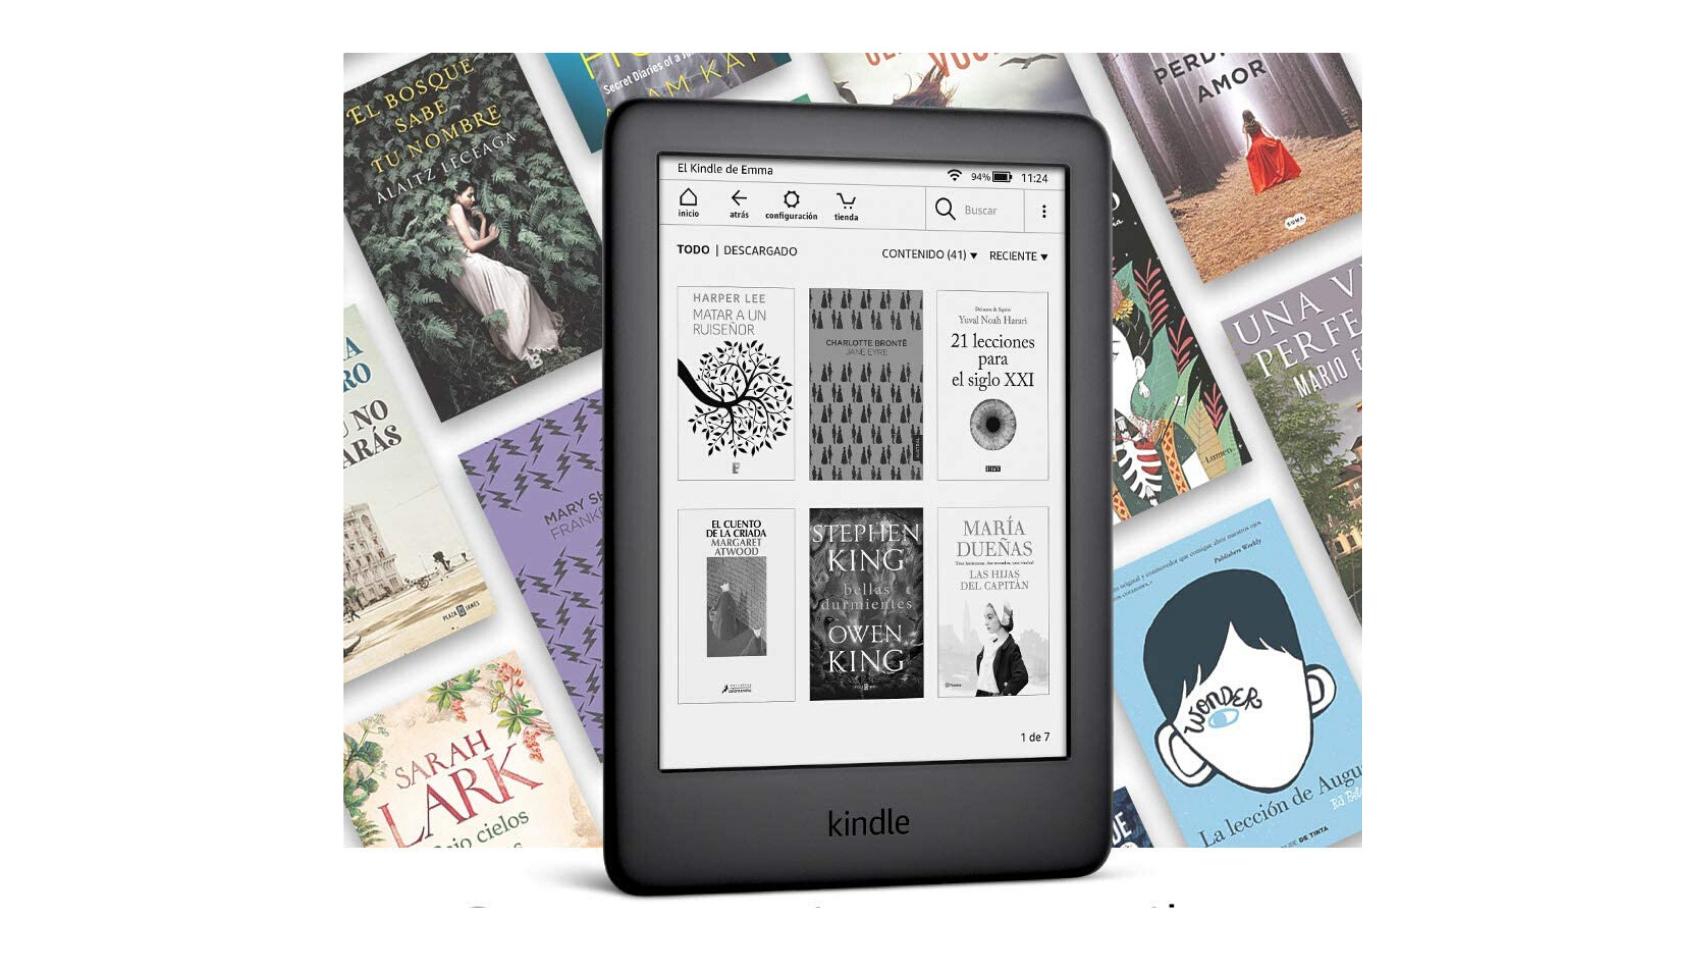 Libros digitales y dispositivos de lectura, ¿dos mercados indisociables?